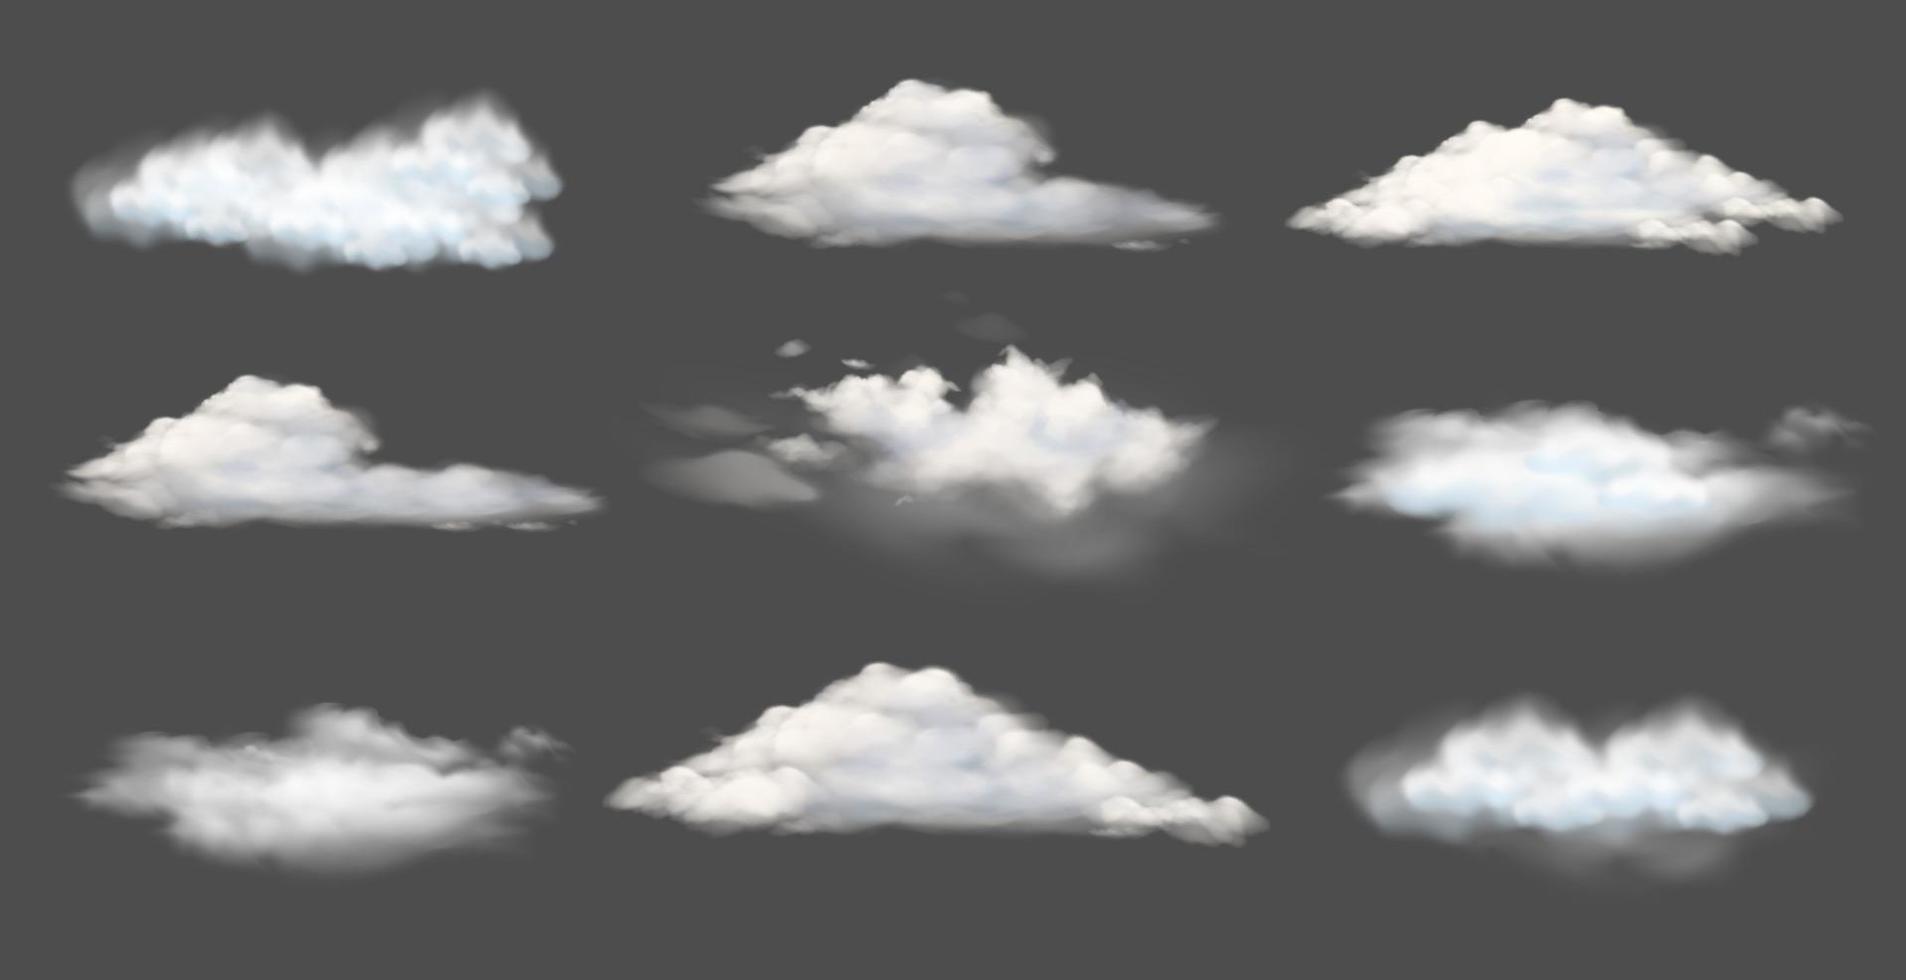 sammlung weißer wolken oder nebel verschiedener formen, vektorillustration natürlicher landschaftsgestaltungselemente vektor